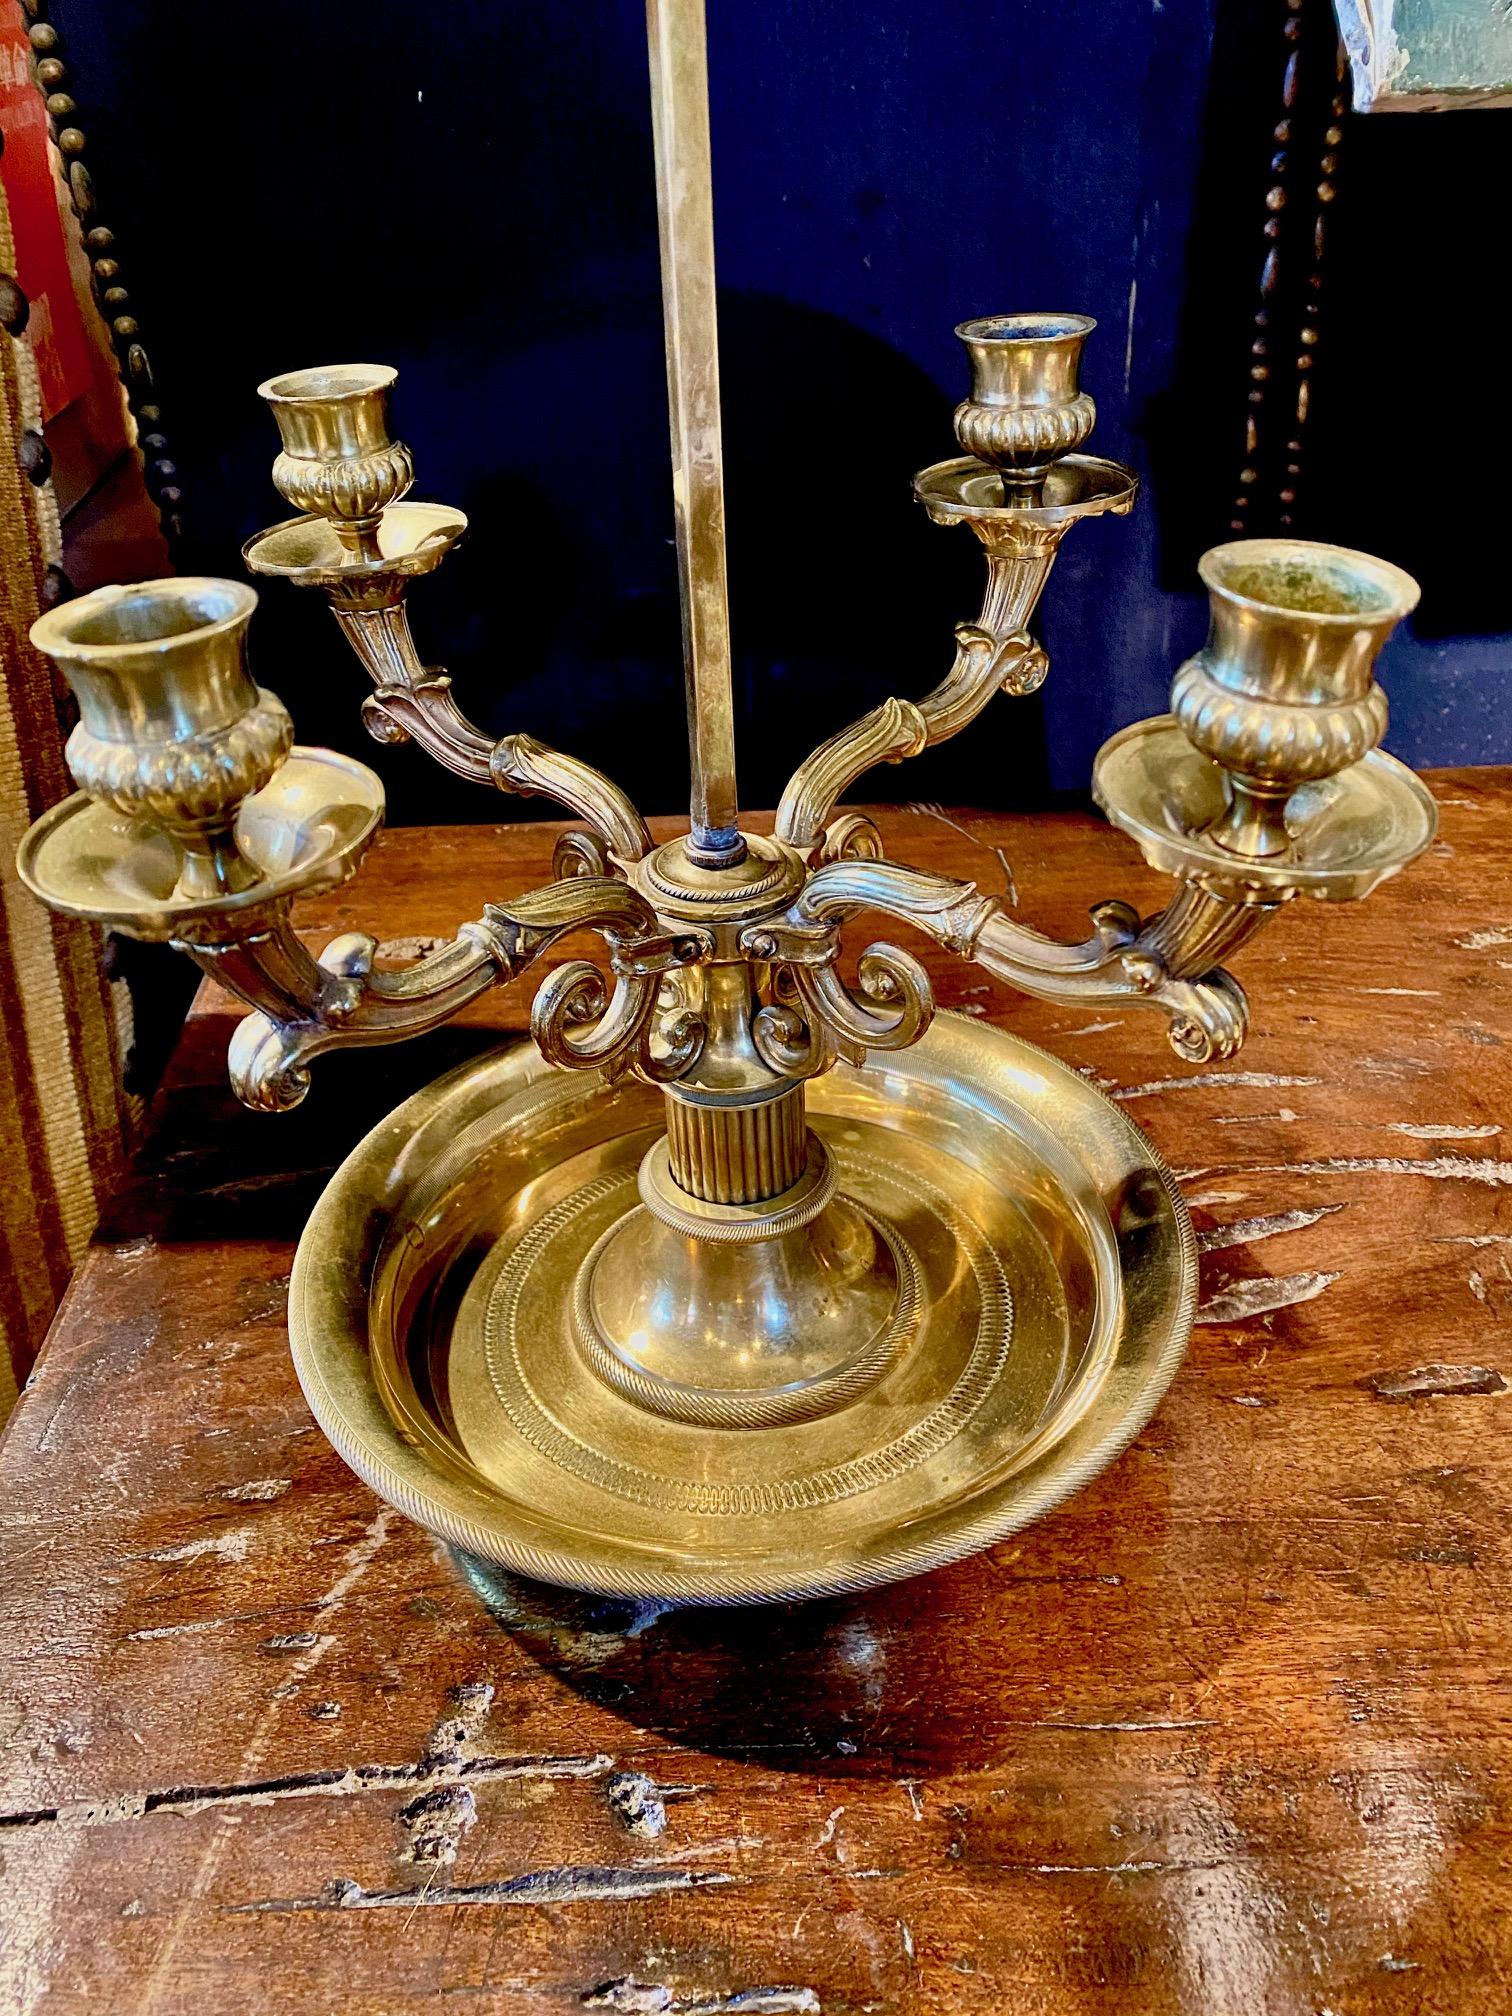 Lampe bouillotte de style Empire français en bronze doré à 4 bras et abat-jour en lampe tole noire.